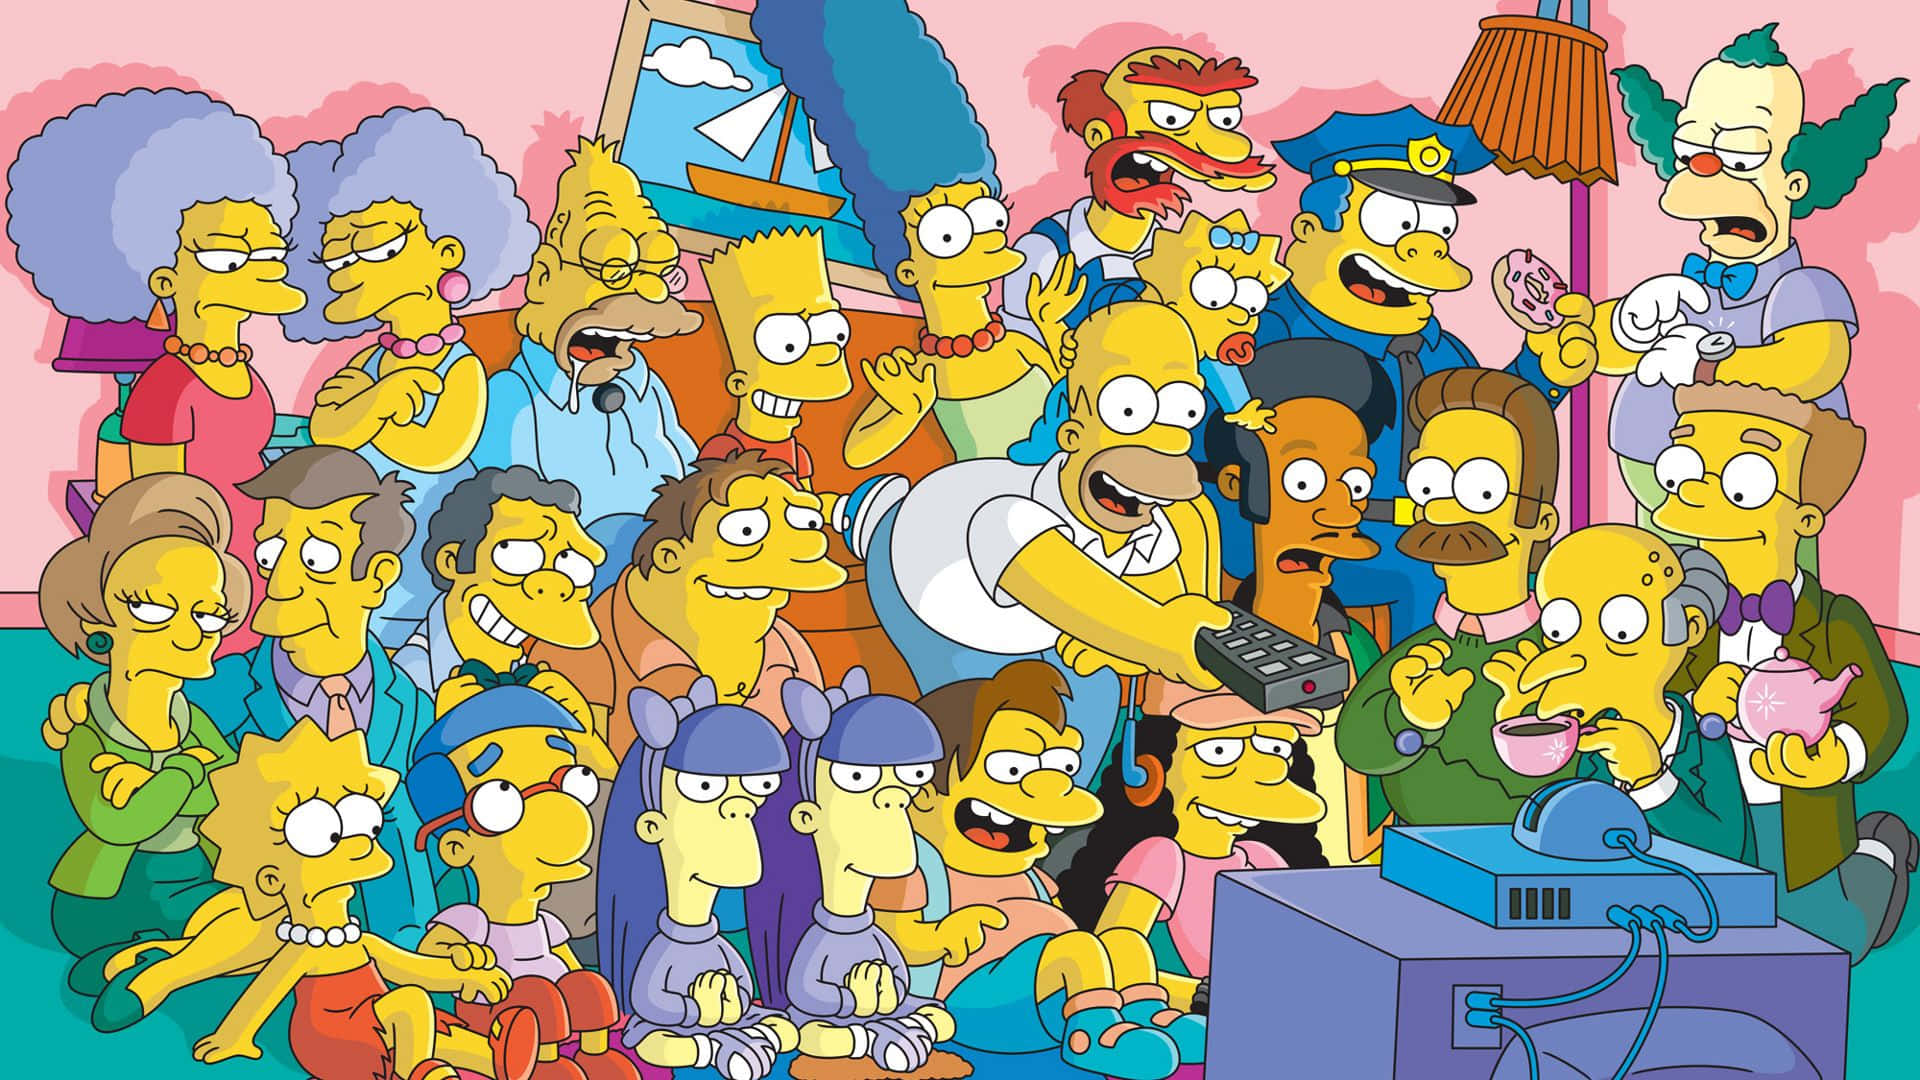 Homersimpson Und Bart Simpson Genießen Ihre Lieblingsaktivität Am Computer. Wallpaper